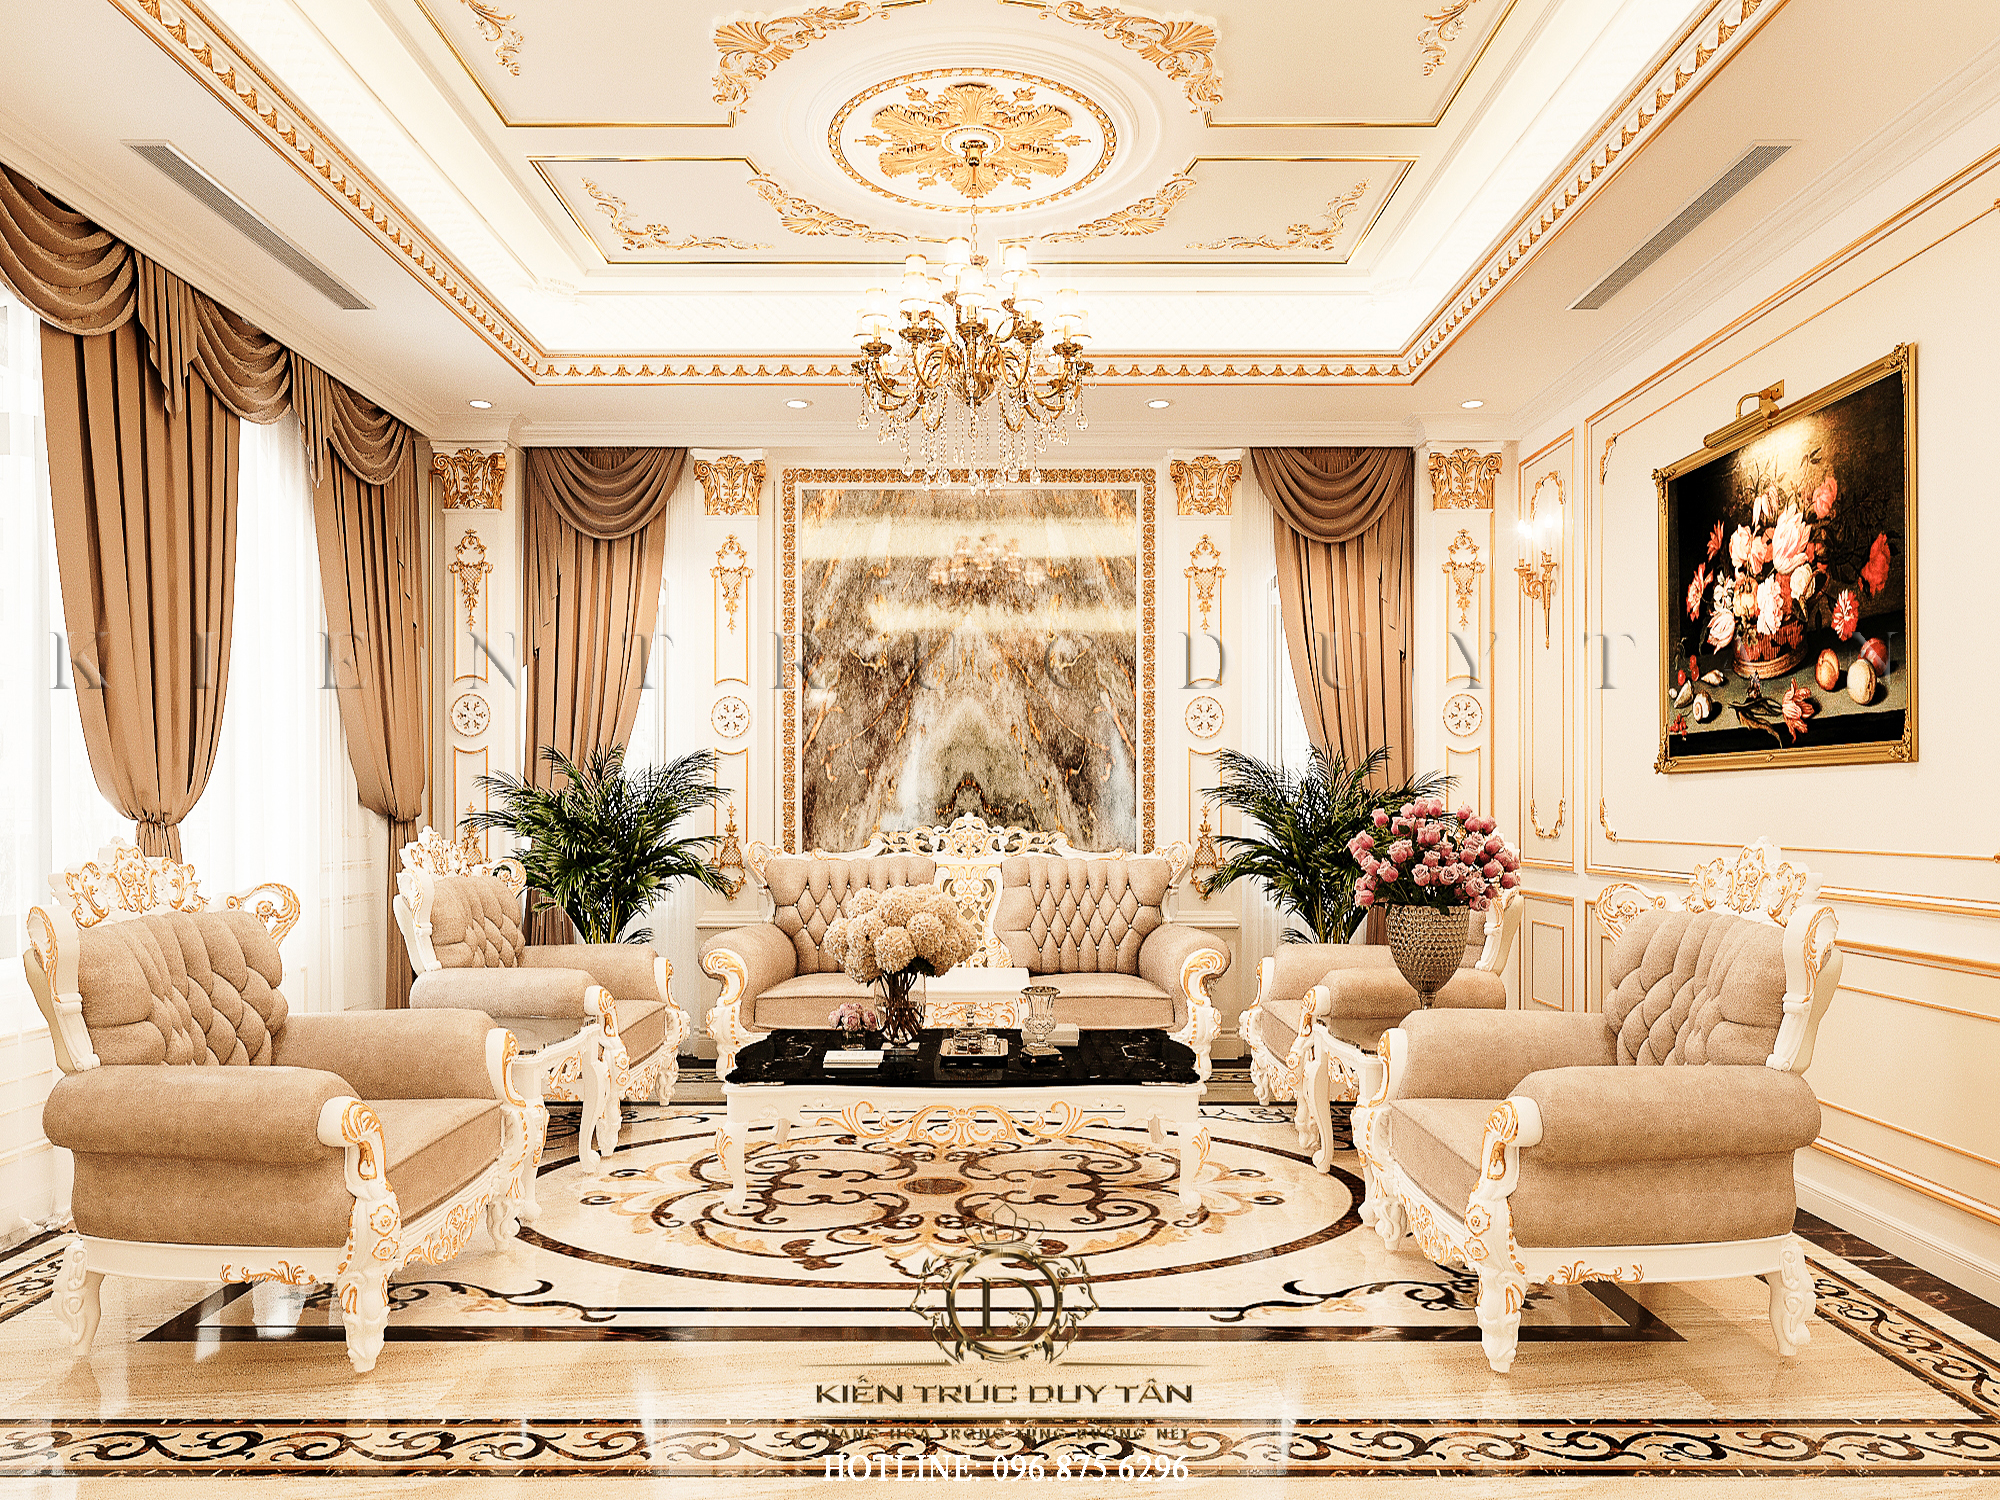 Thiết kế Nội Thất Villa 3 tầng, nhập khẩu Châu Âu 100% – Anh Hiếu – Lâm Đồng